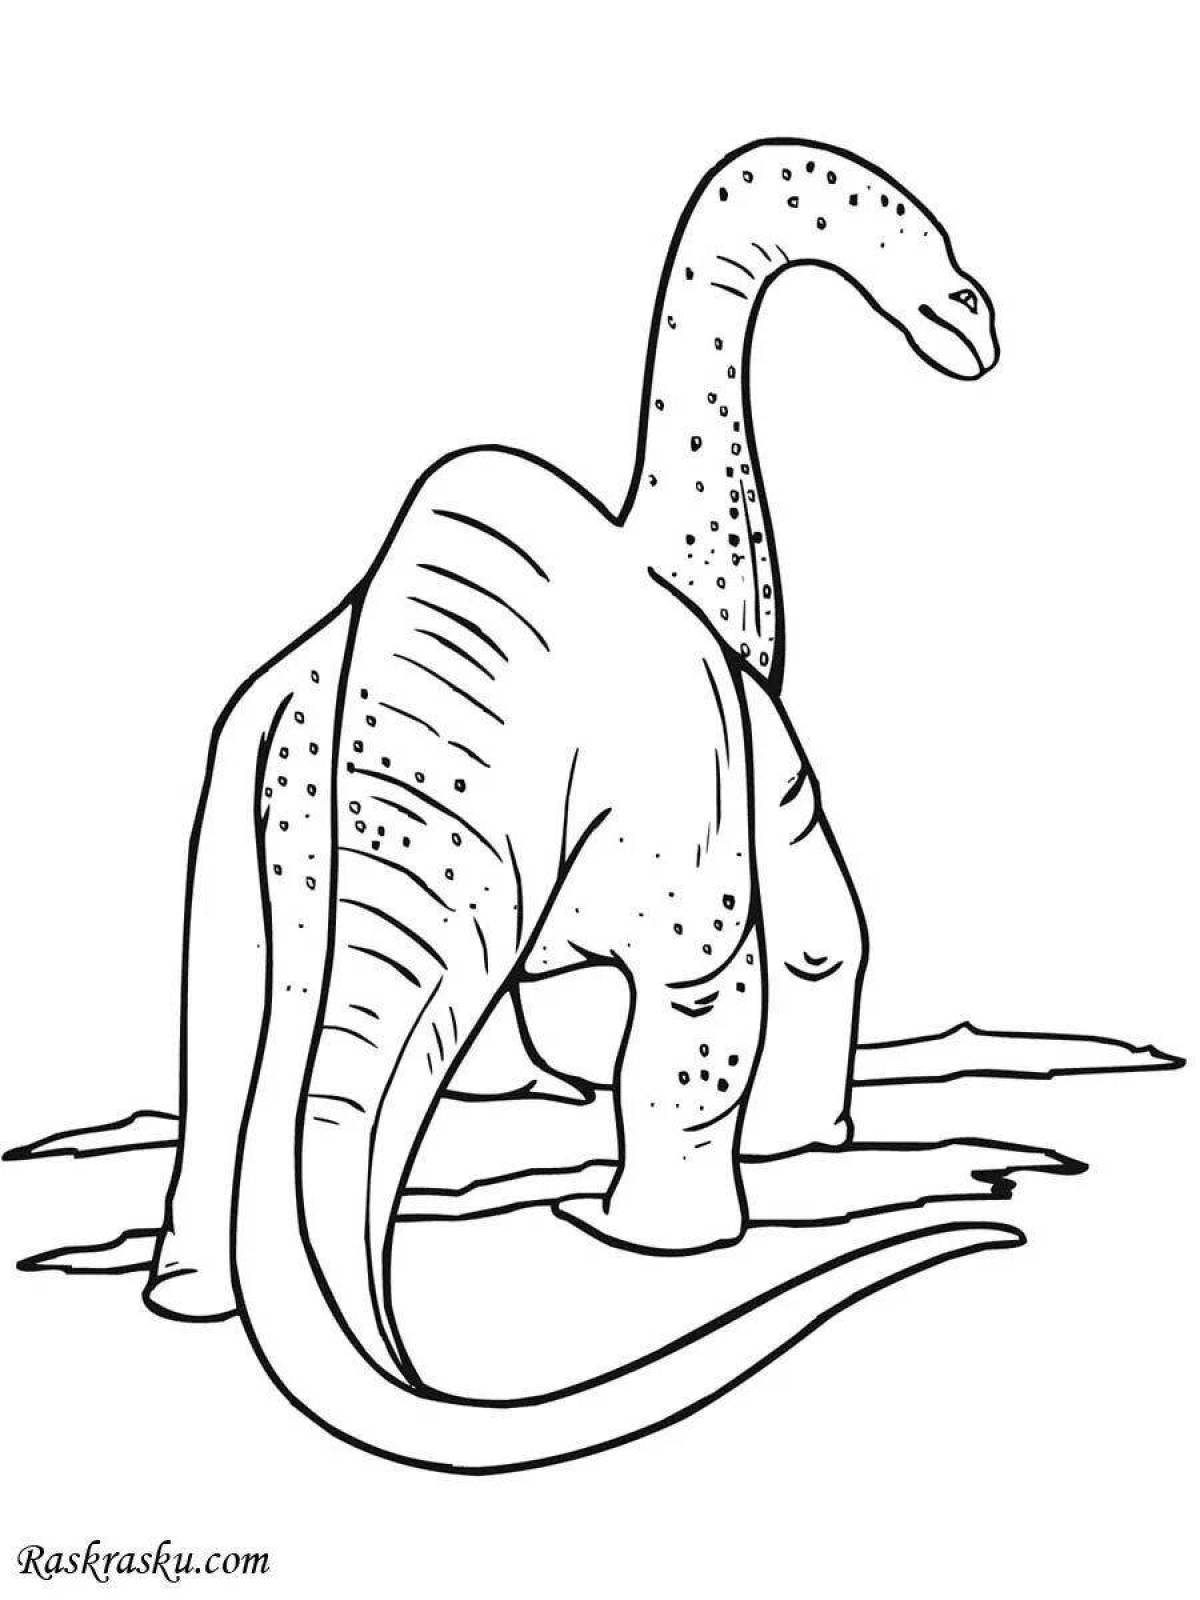 Apatosaurus coloring book